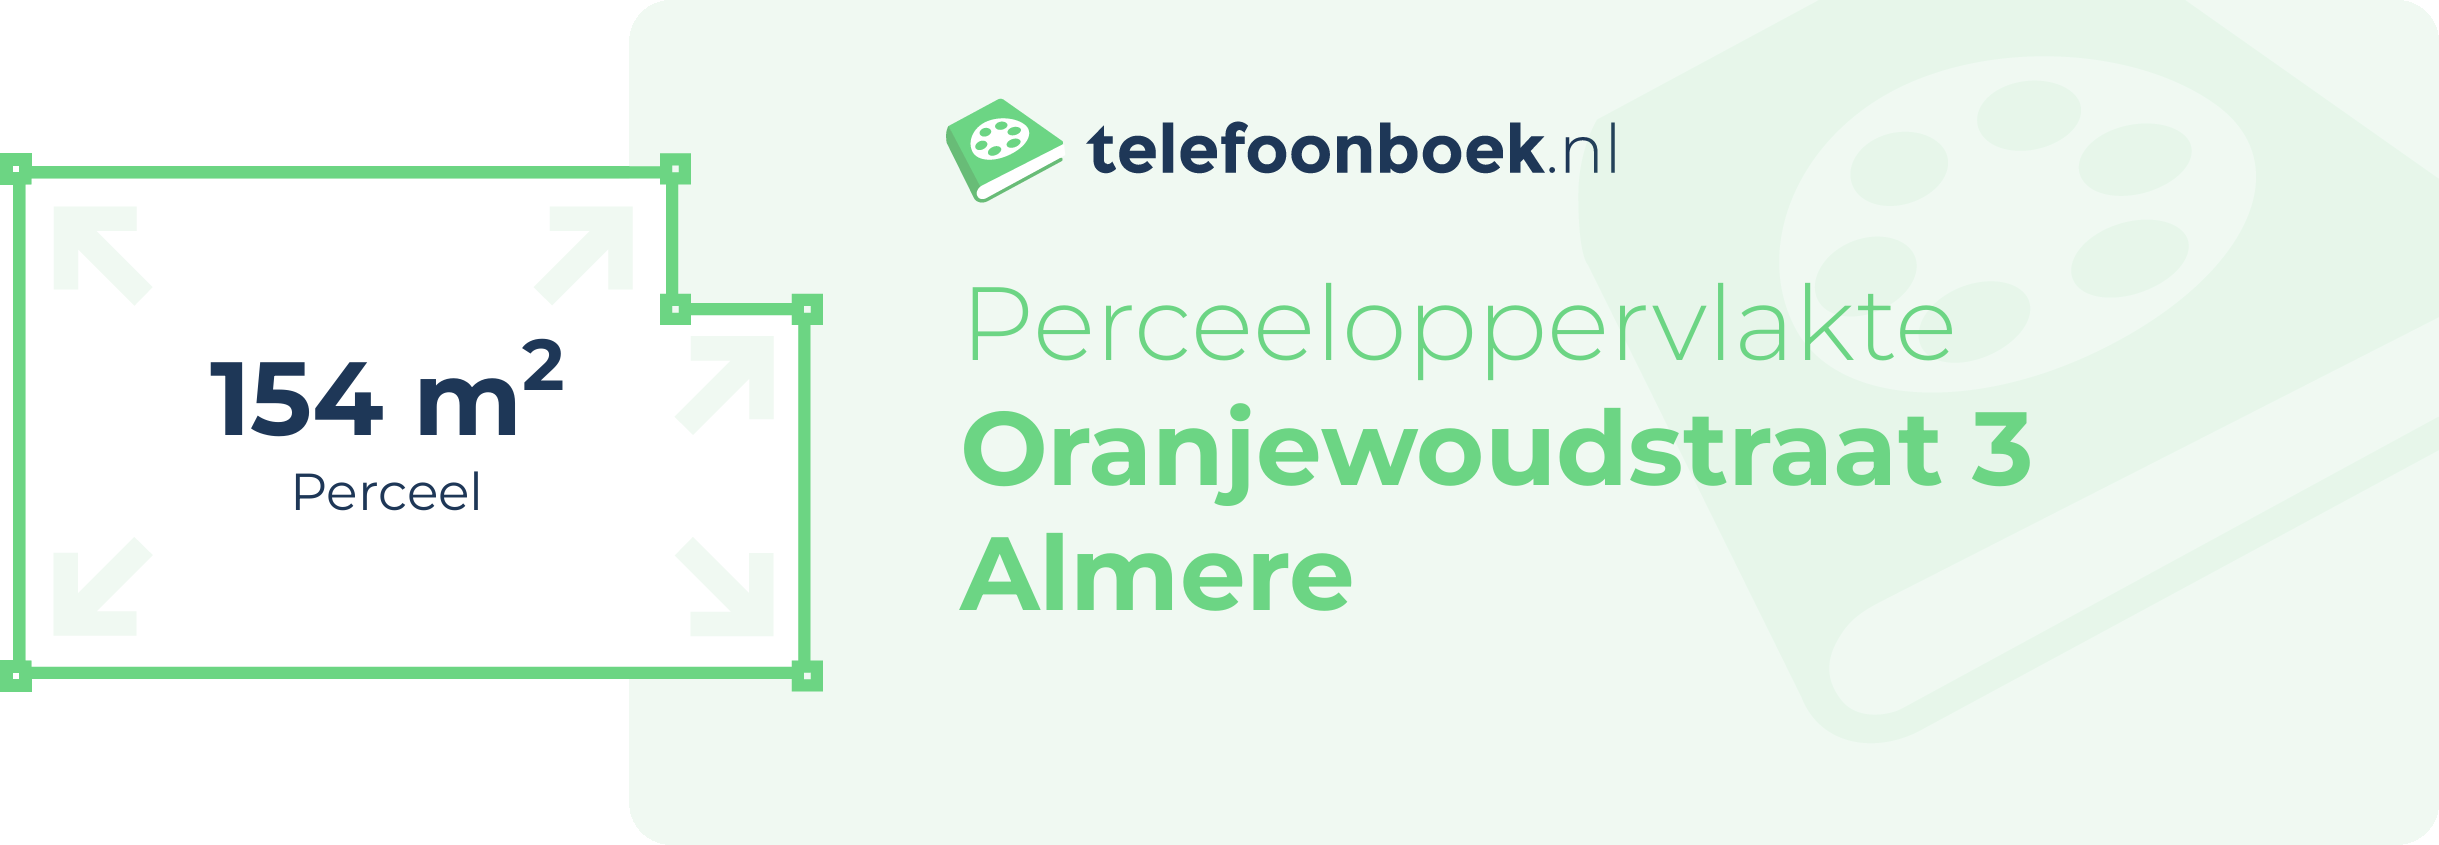 Perceeloppervlakte Oranjewoudstraat 3 Almere